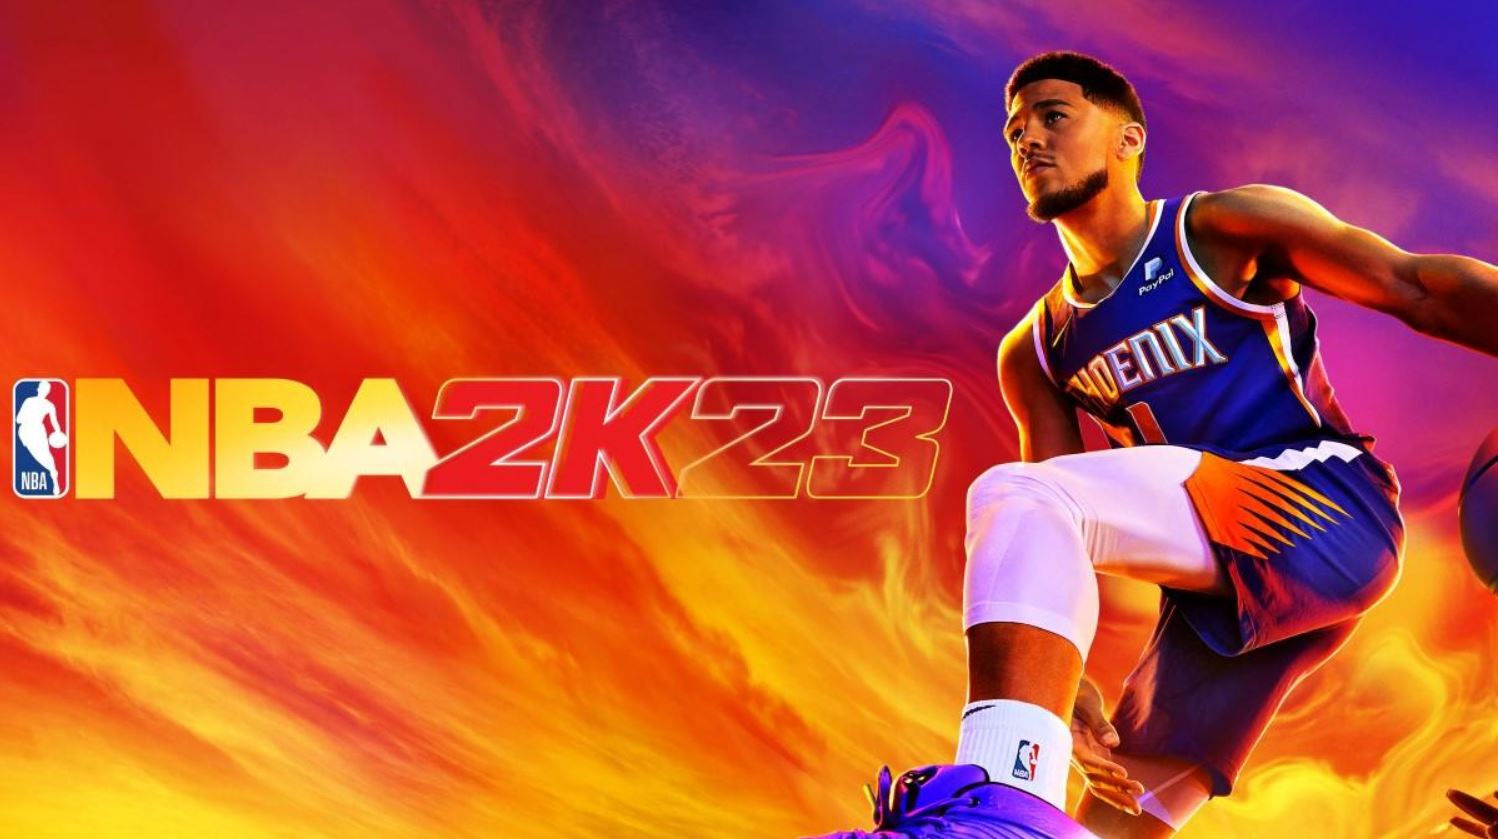 Foto di copertina di NBA 2k23 